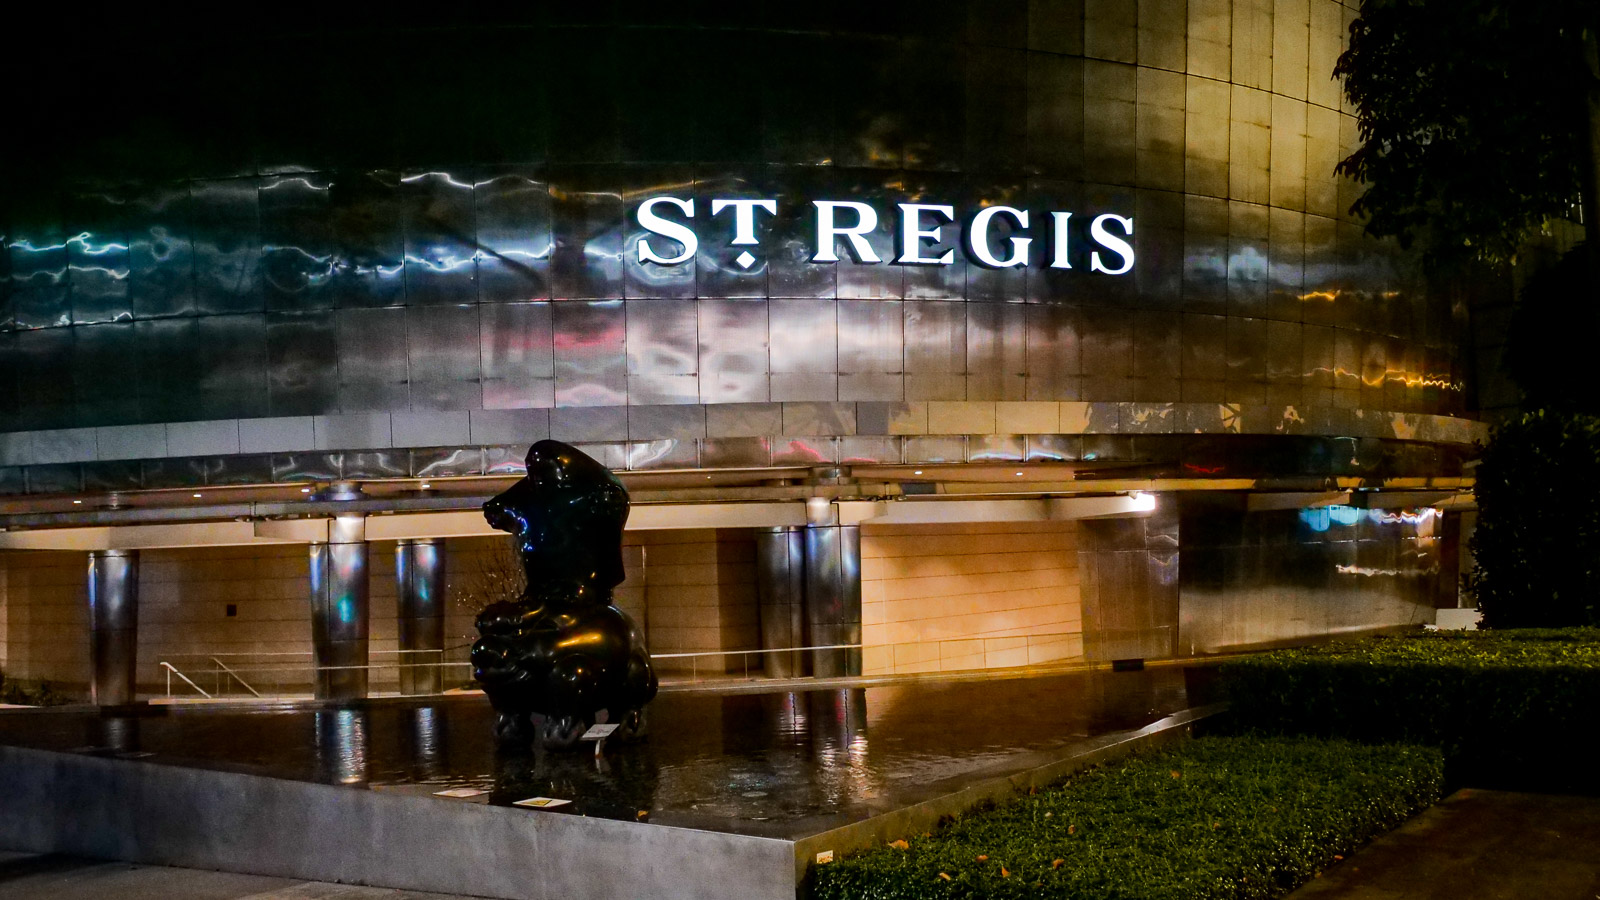 St Regis Singapore at Night